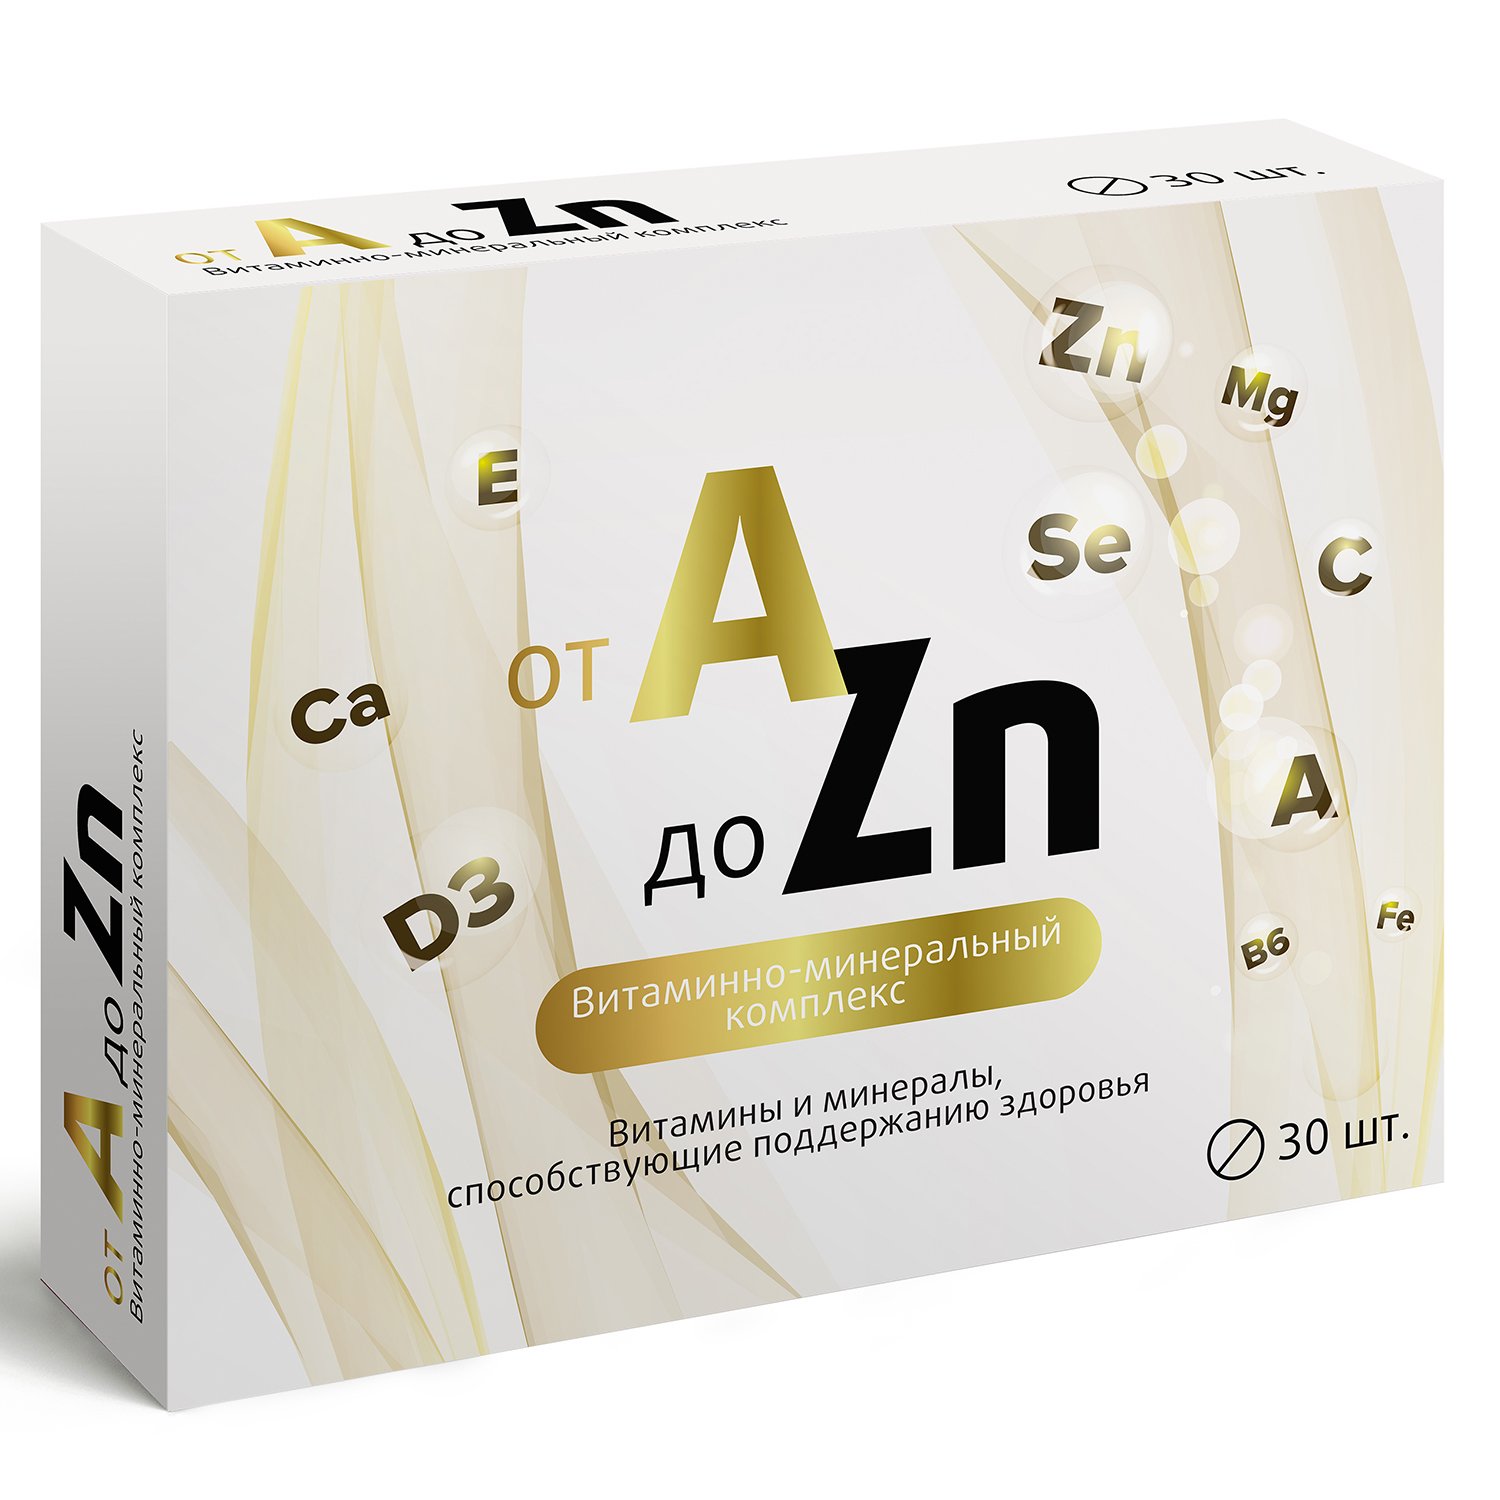 A zn таблетки отзывы. Витаминно-минеральный комплекс от a до ZN таблетки. Витаминный комплекс a-ZN витамир. Витаминно-минеральный комплекс a-ZN таблетки 630мг №60 импловит.